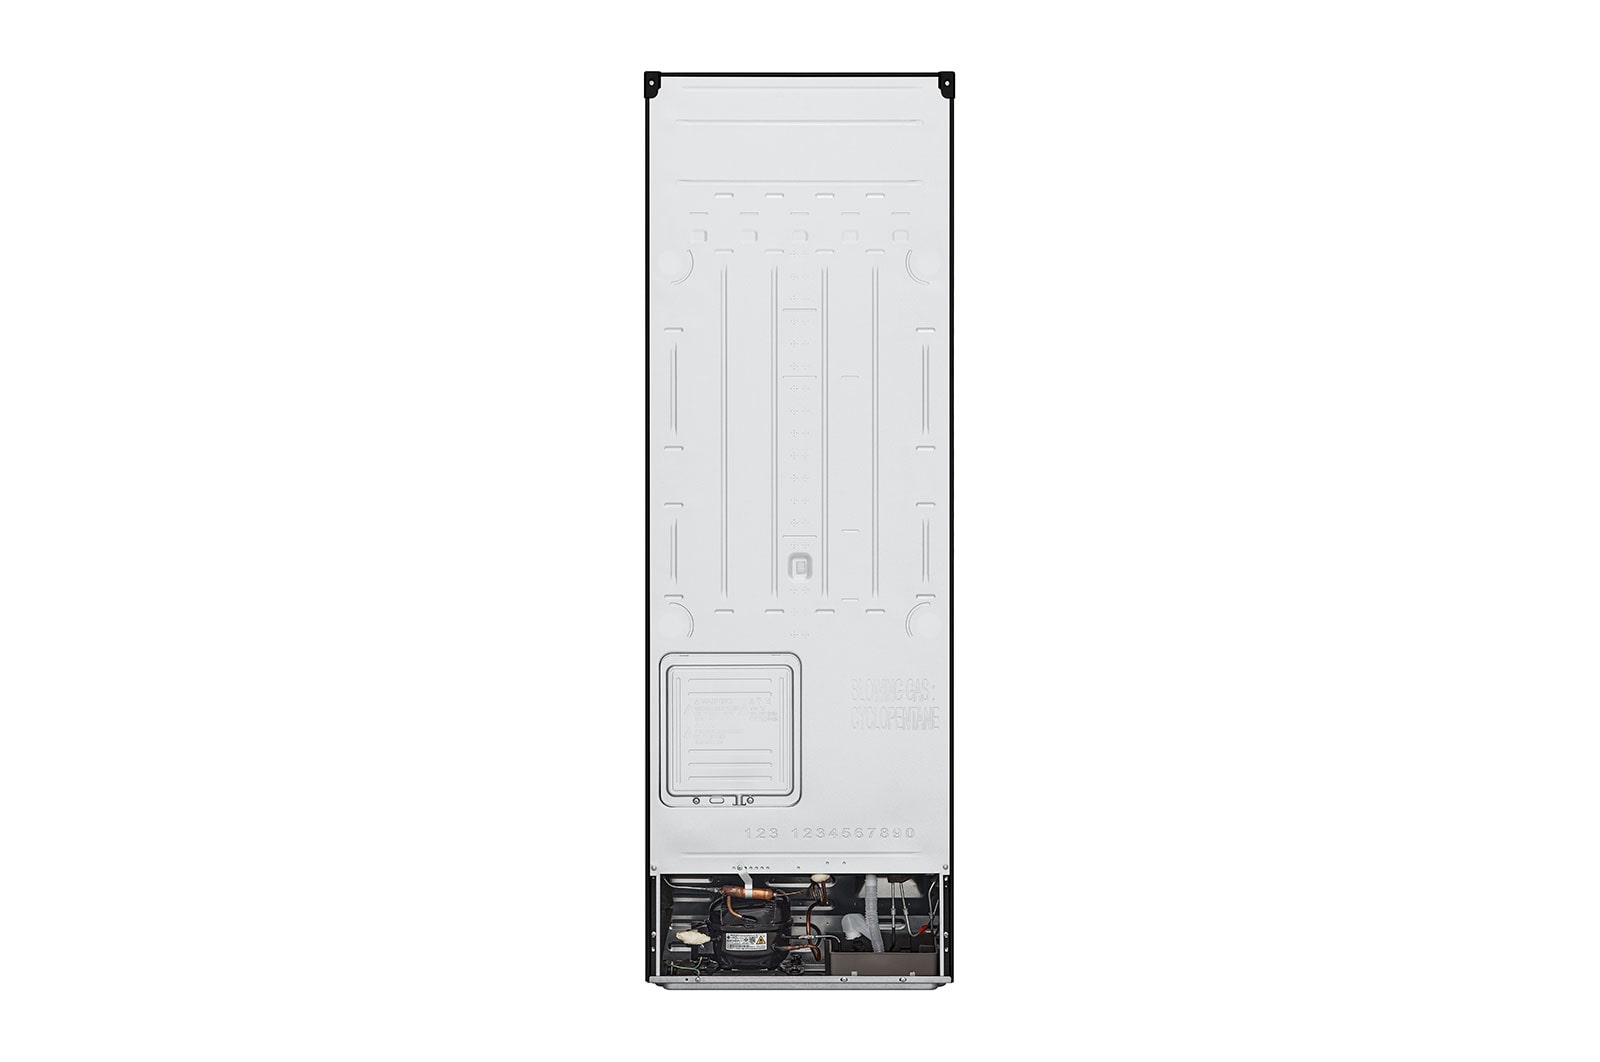 Tủ lạnh LG Inverter 264L GV-D262BL